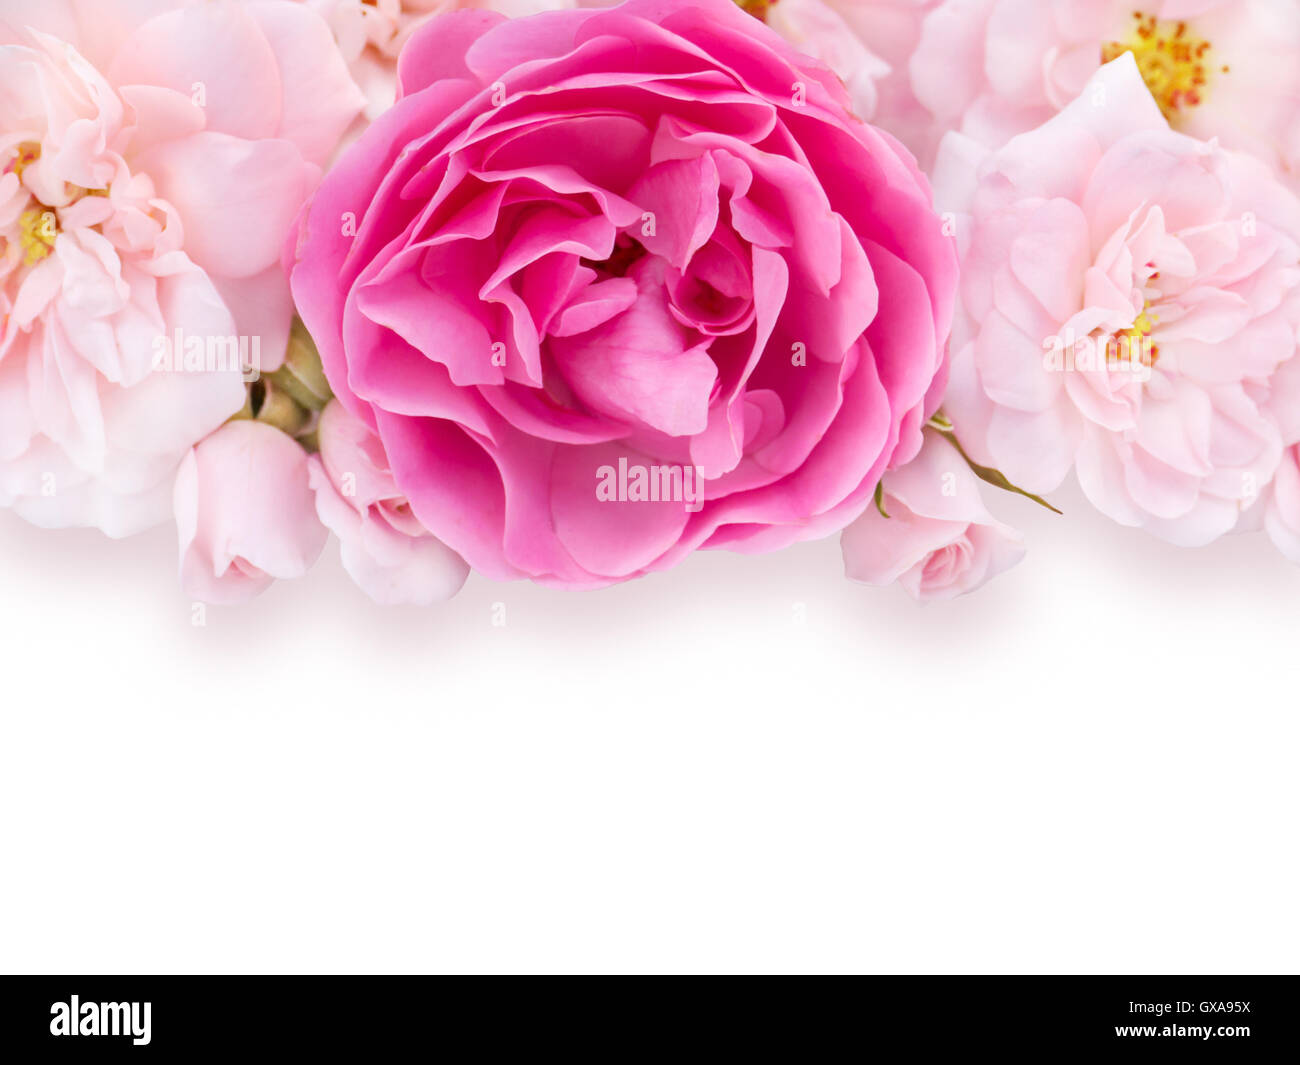 Rose pâle et rose vif, des roses avec ombre légère sur le fond blanc Banque D'Images